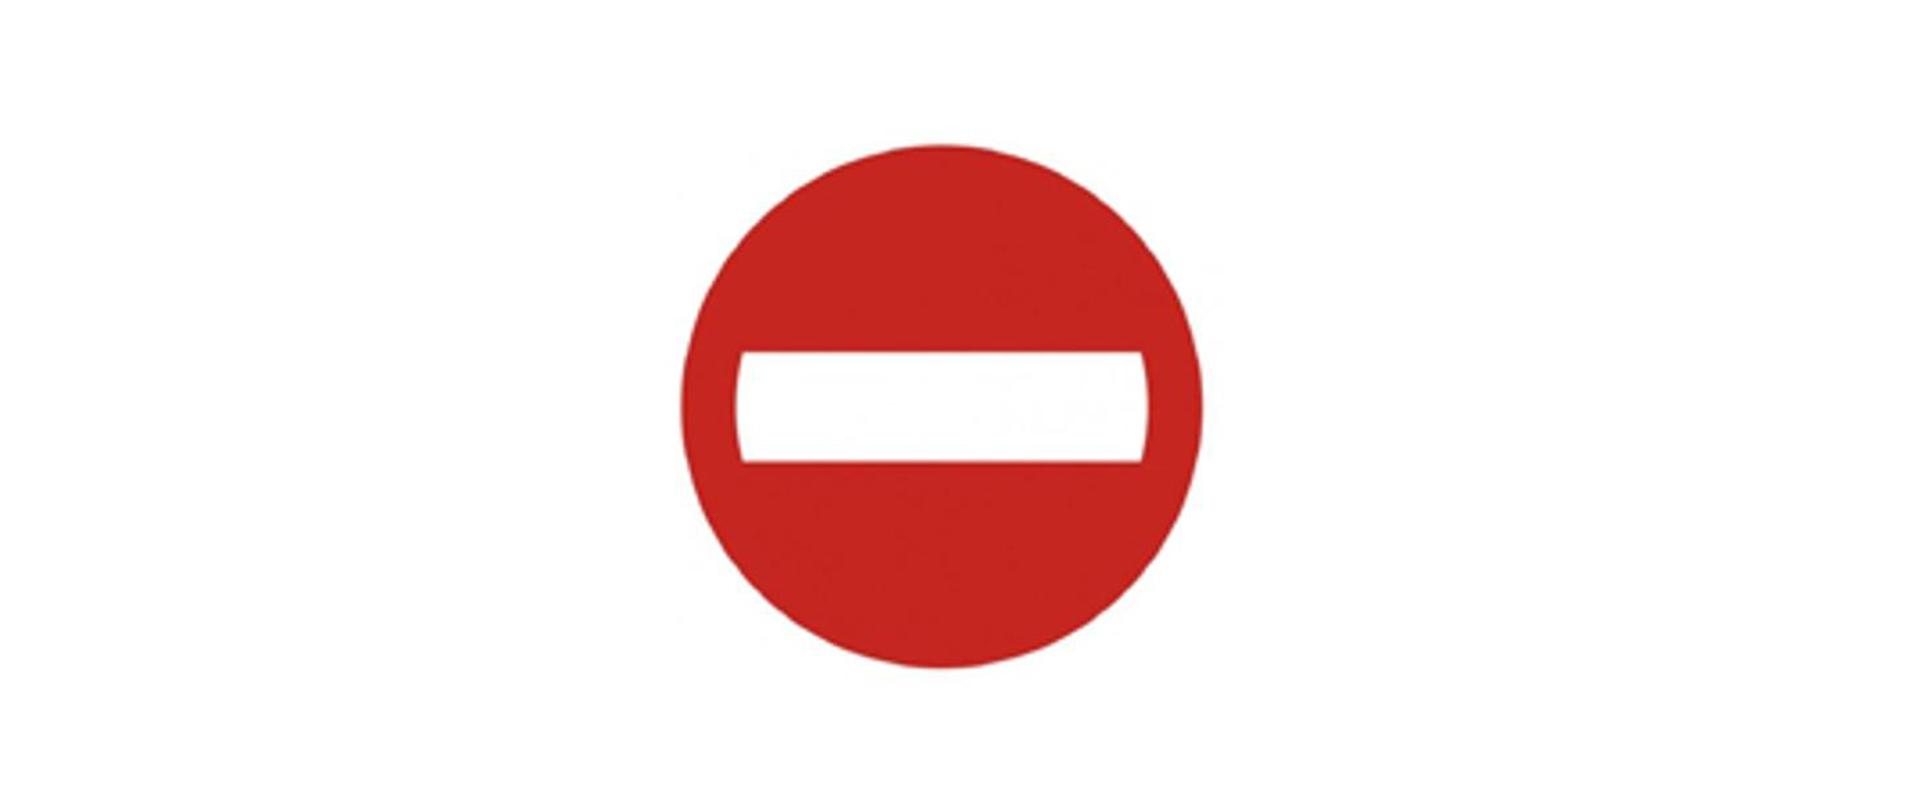 Zdjęcie przedstawia znak zakazu wjazdu wynikający z obowiązujących przepisów ruchu drogowego